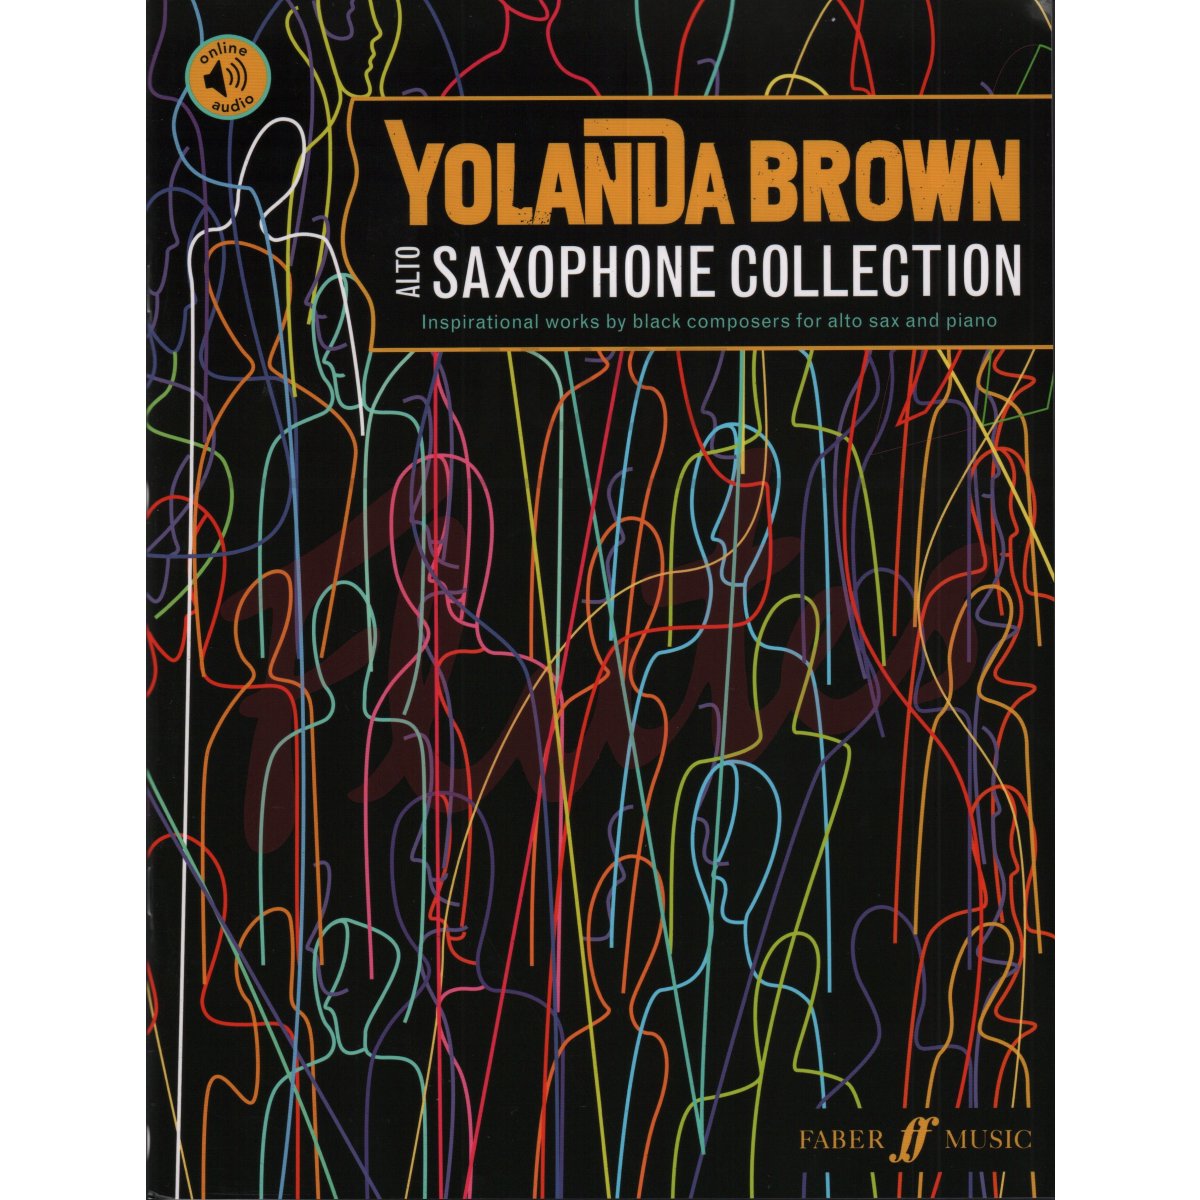 YolanDa Brown’s Alto Saxophone Collection